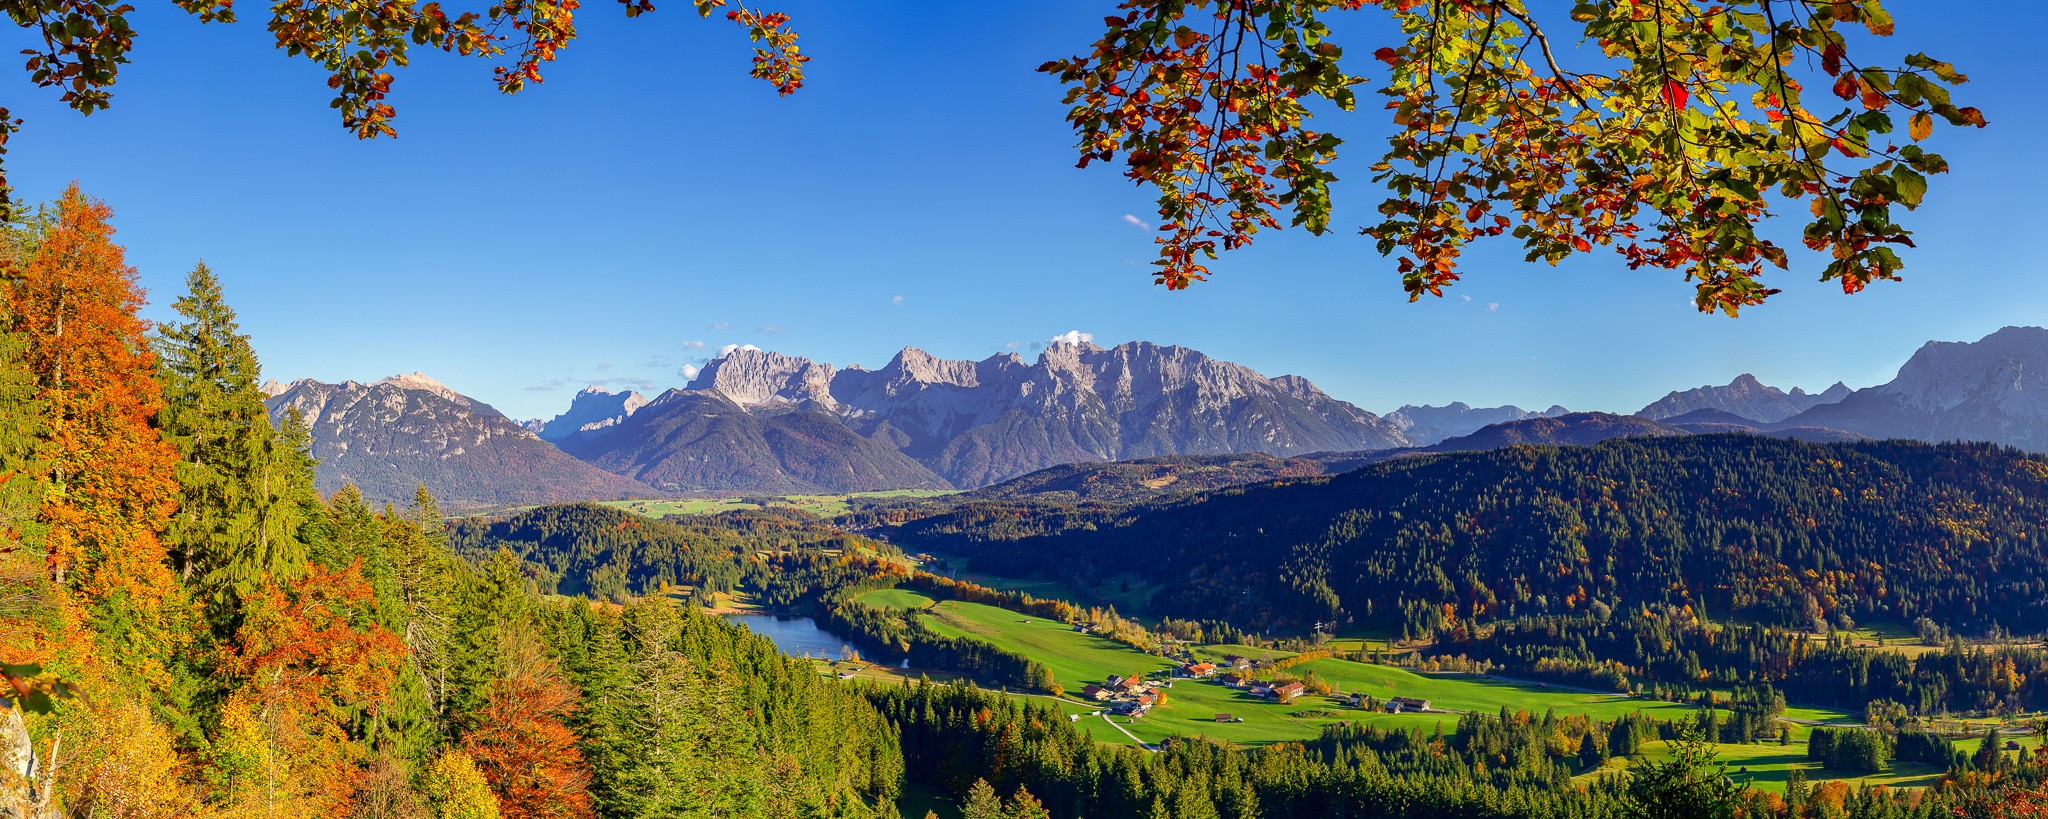 Berglandschaft mit Karwendelgebirge. Herbst in Gerold